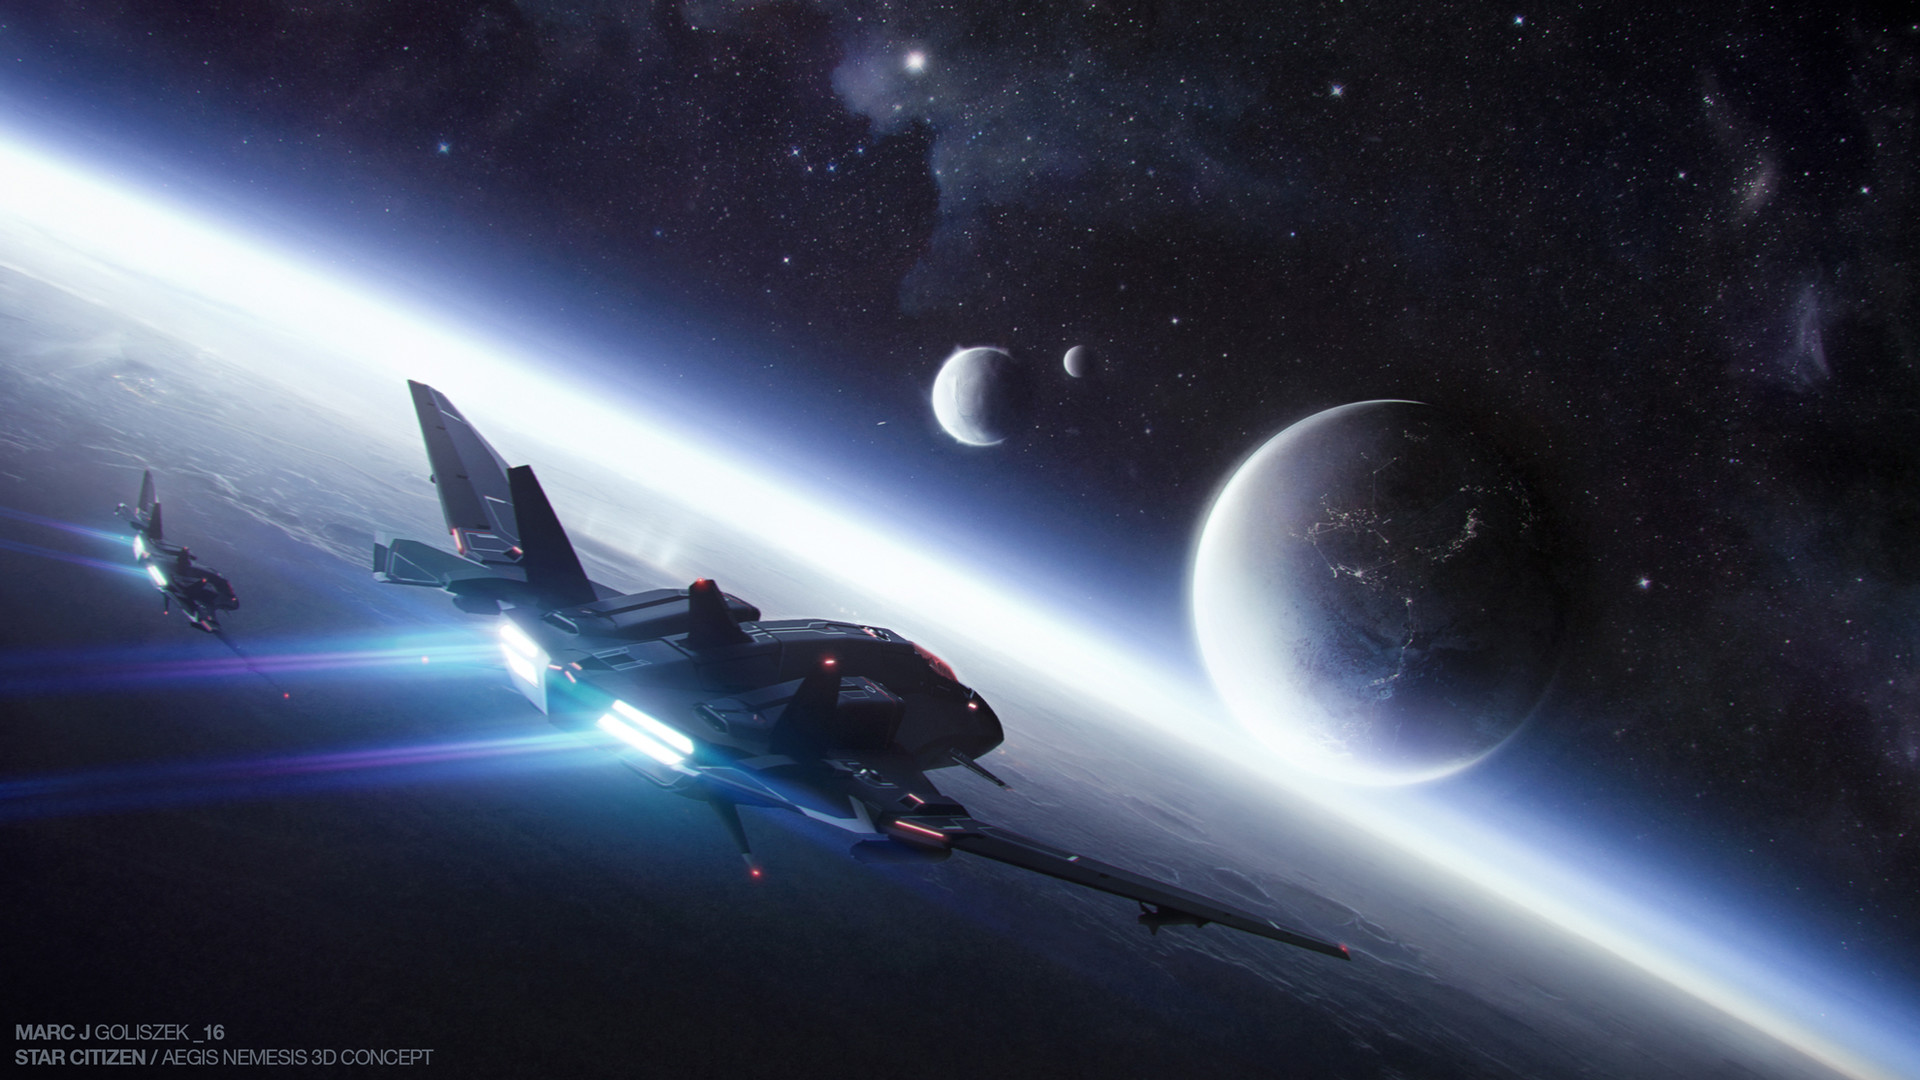 Star Citizen / Aegis Nemesis Spaceship 3D Concept.